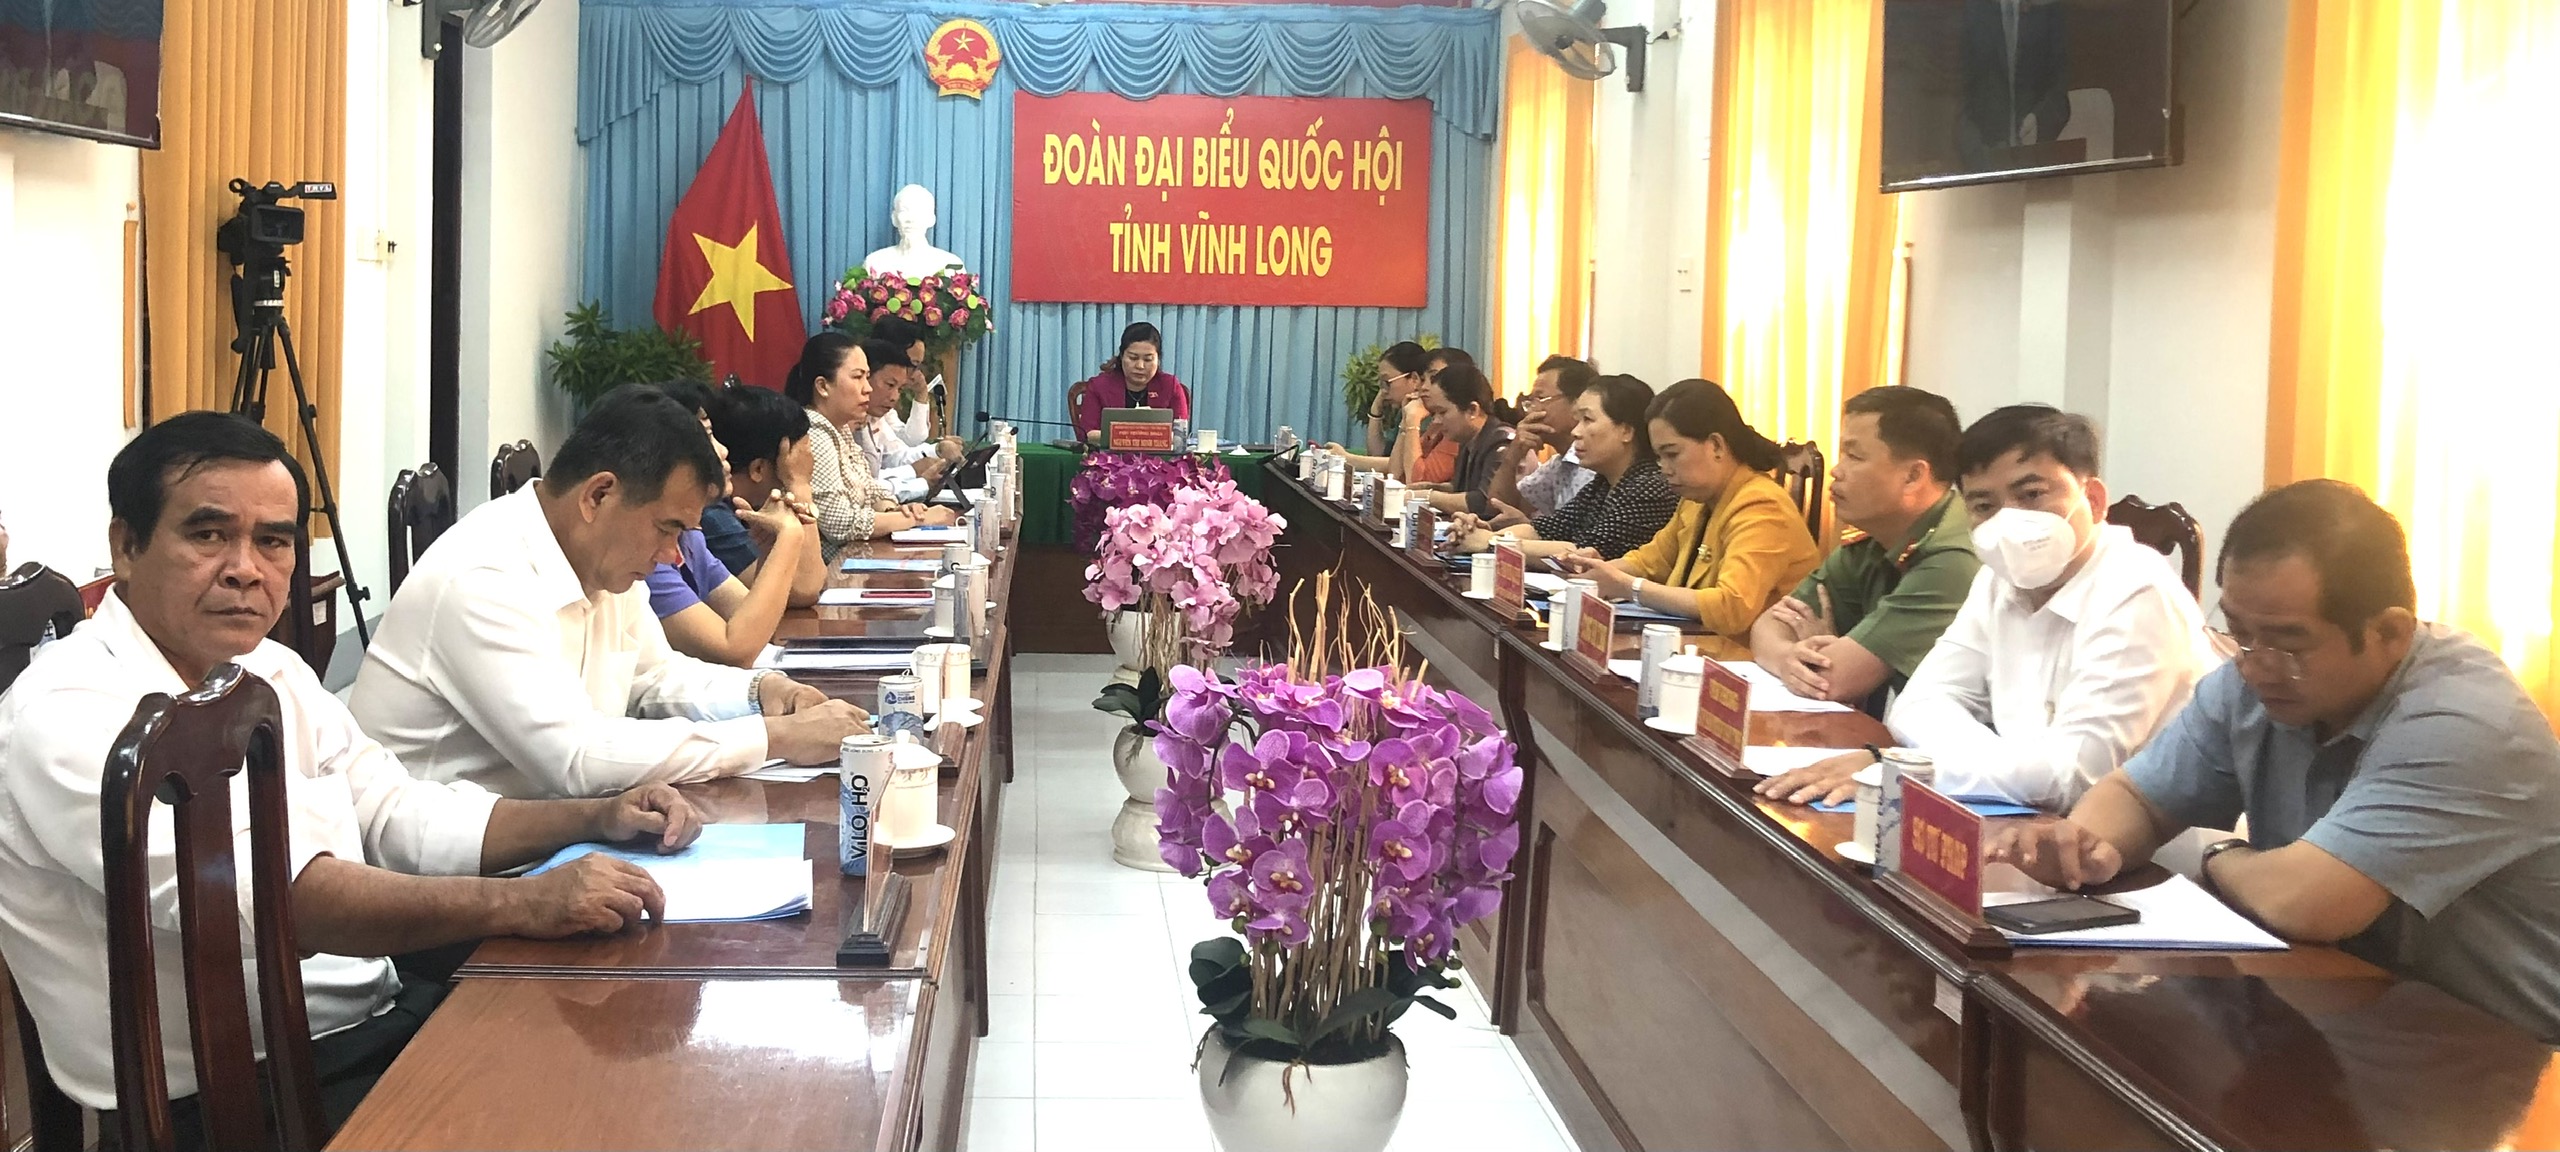 Đoàn Đại biểu Quốc hội đơn vị tỉnh Vĩnh Long tham dự phiên chất vấn và trả lời chất vấn.